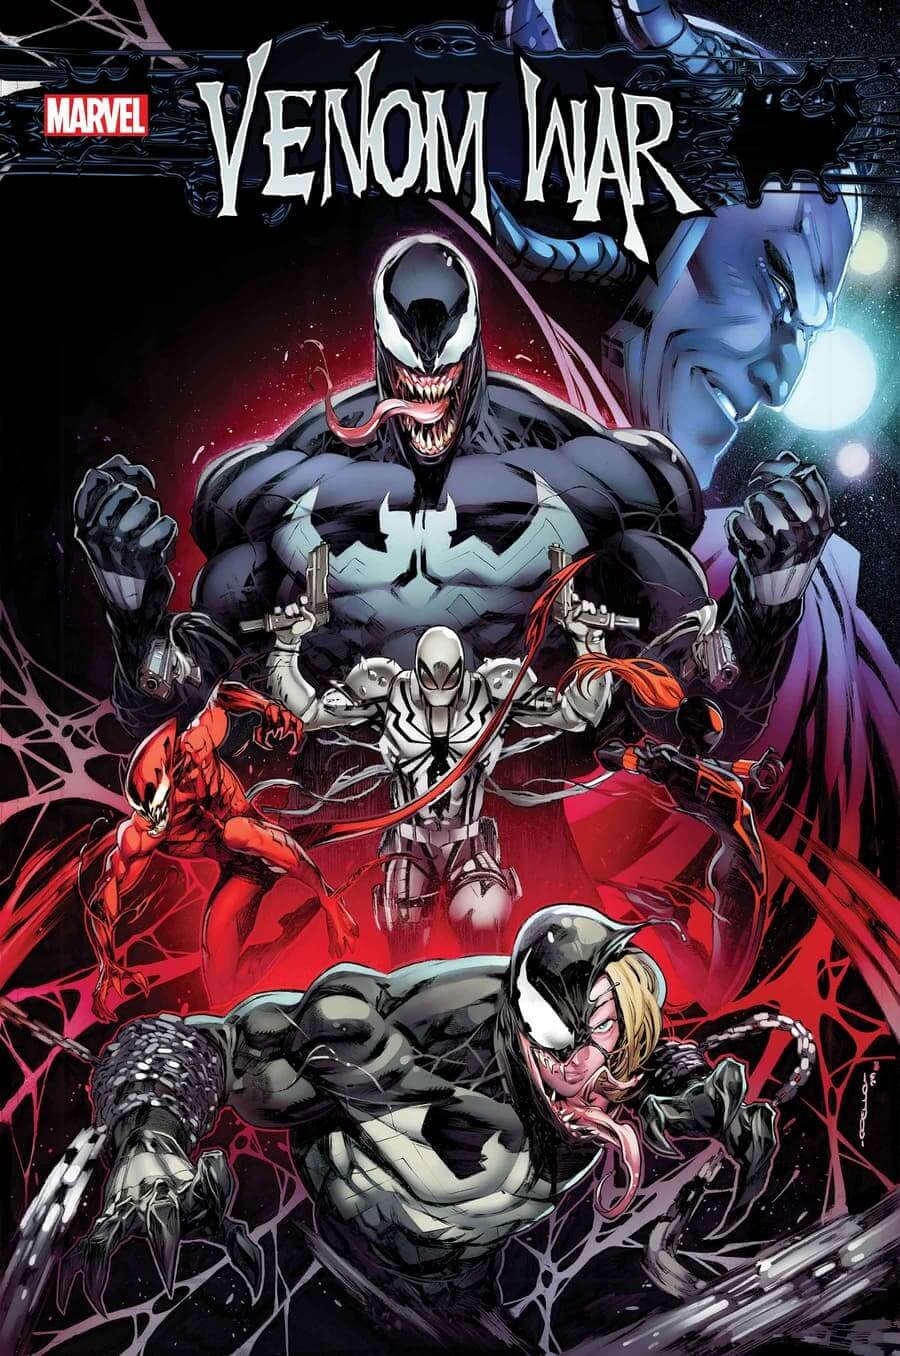 Cover di Venom War 1 di Iban Coello